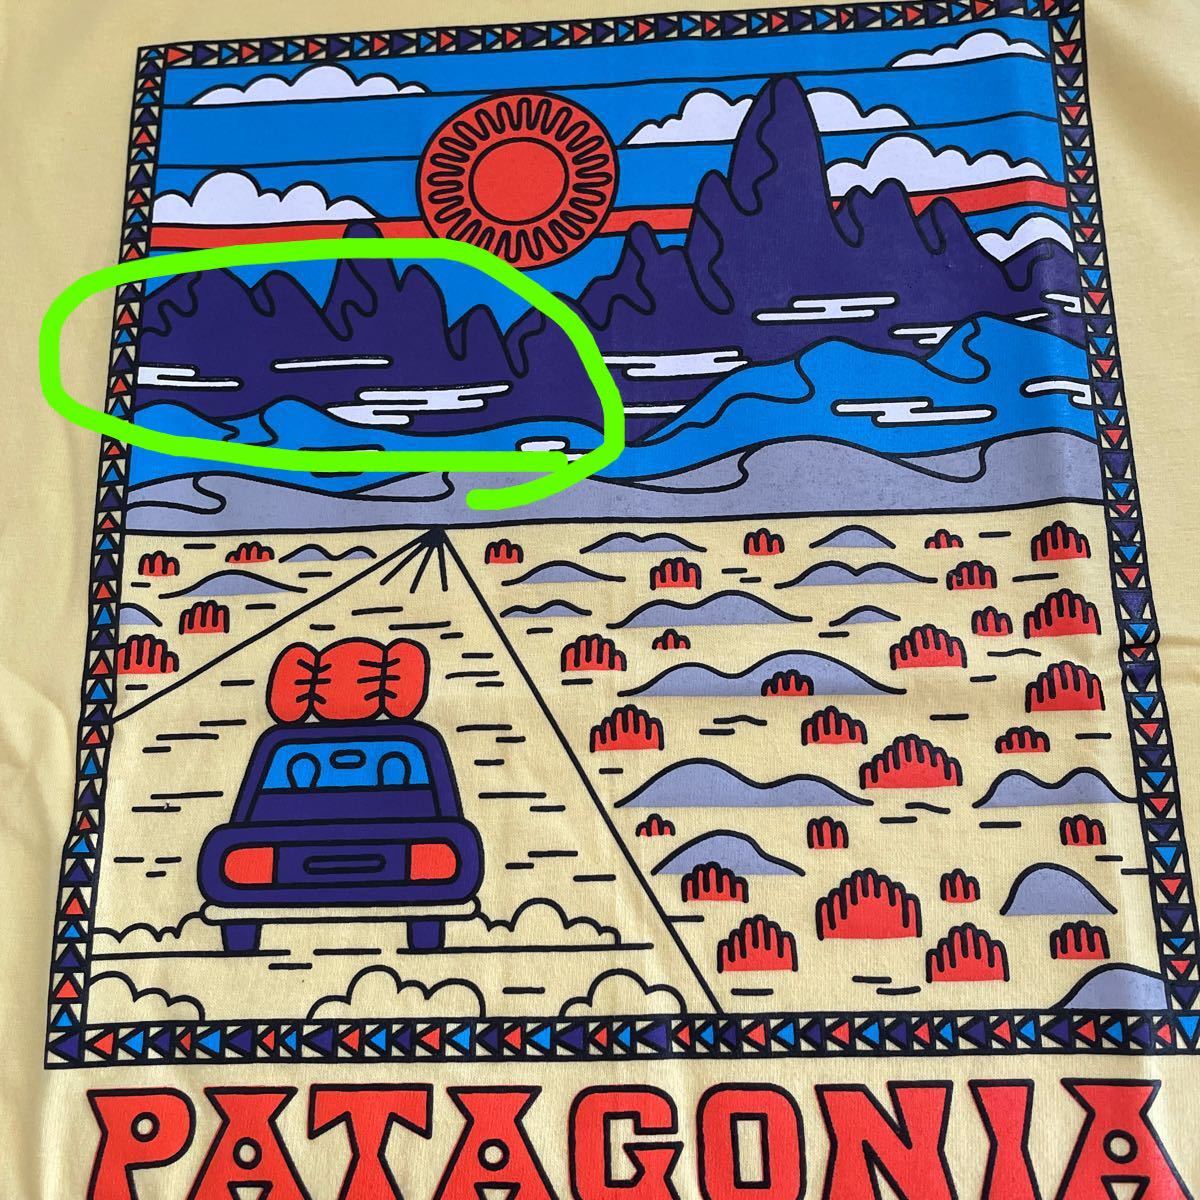 パタゴニア　【patagonia】 サミットロード　Tシャツ ライトイエロー　Sサイズ  《訳あり品》